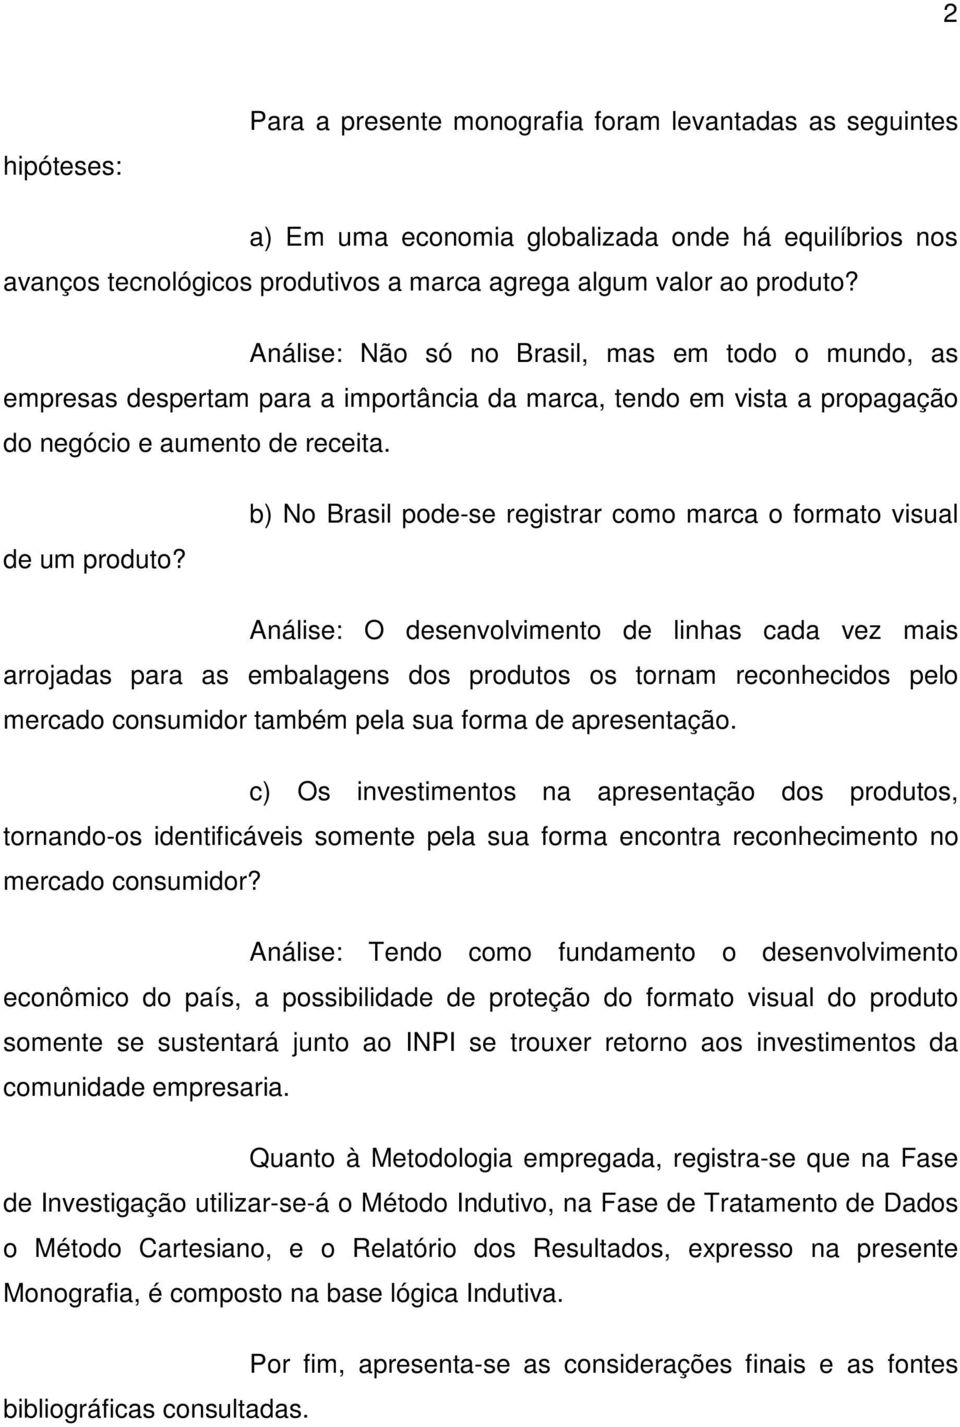 b) No Brasil pode-se registrar como marca o formato visual Análise: O desenvolvimento de linhas cada vez mais arrojadas para as embalagens dos produtos os tornam reconhecidos pelo mercado consumidor